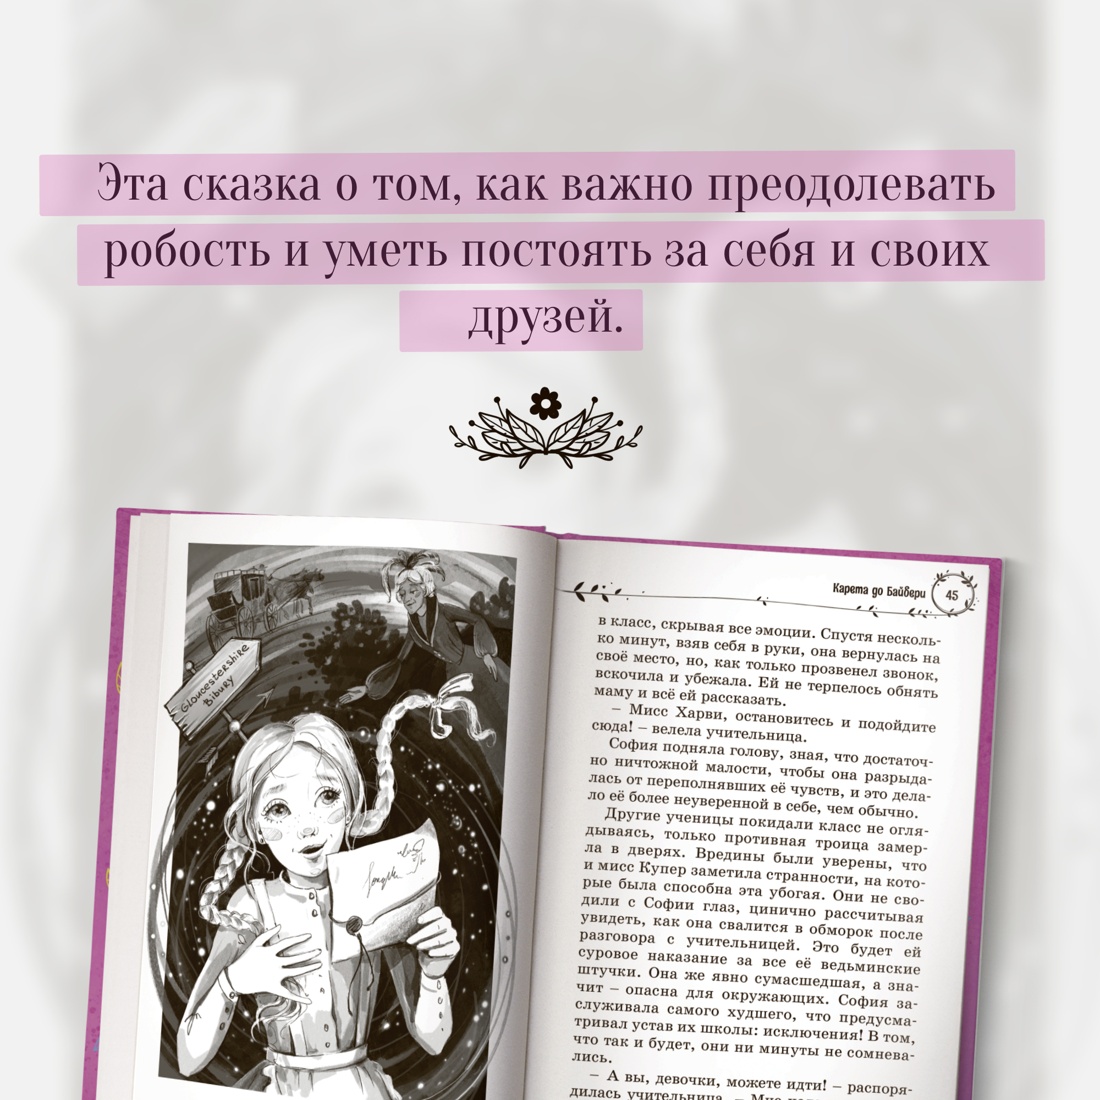 Промо материал к книге "София в волшебных мирах" №4